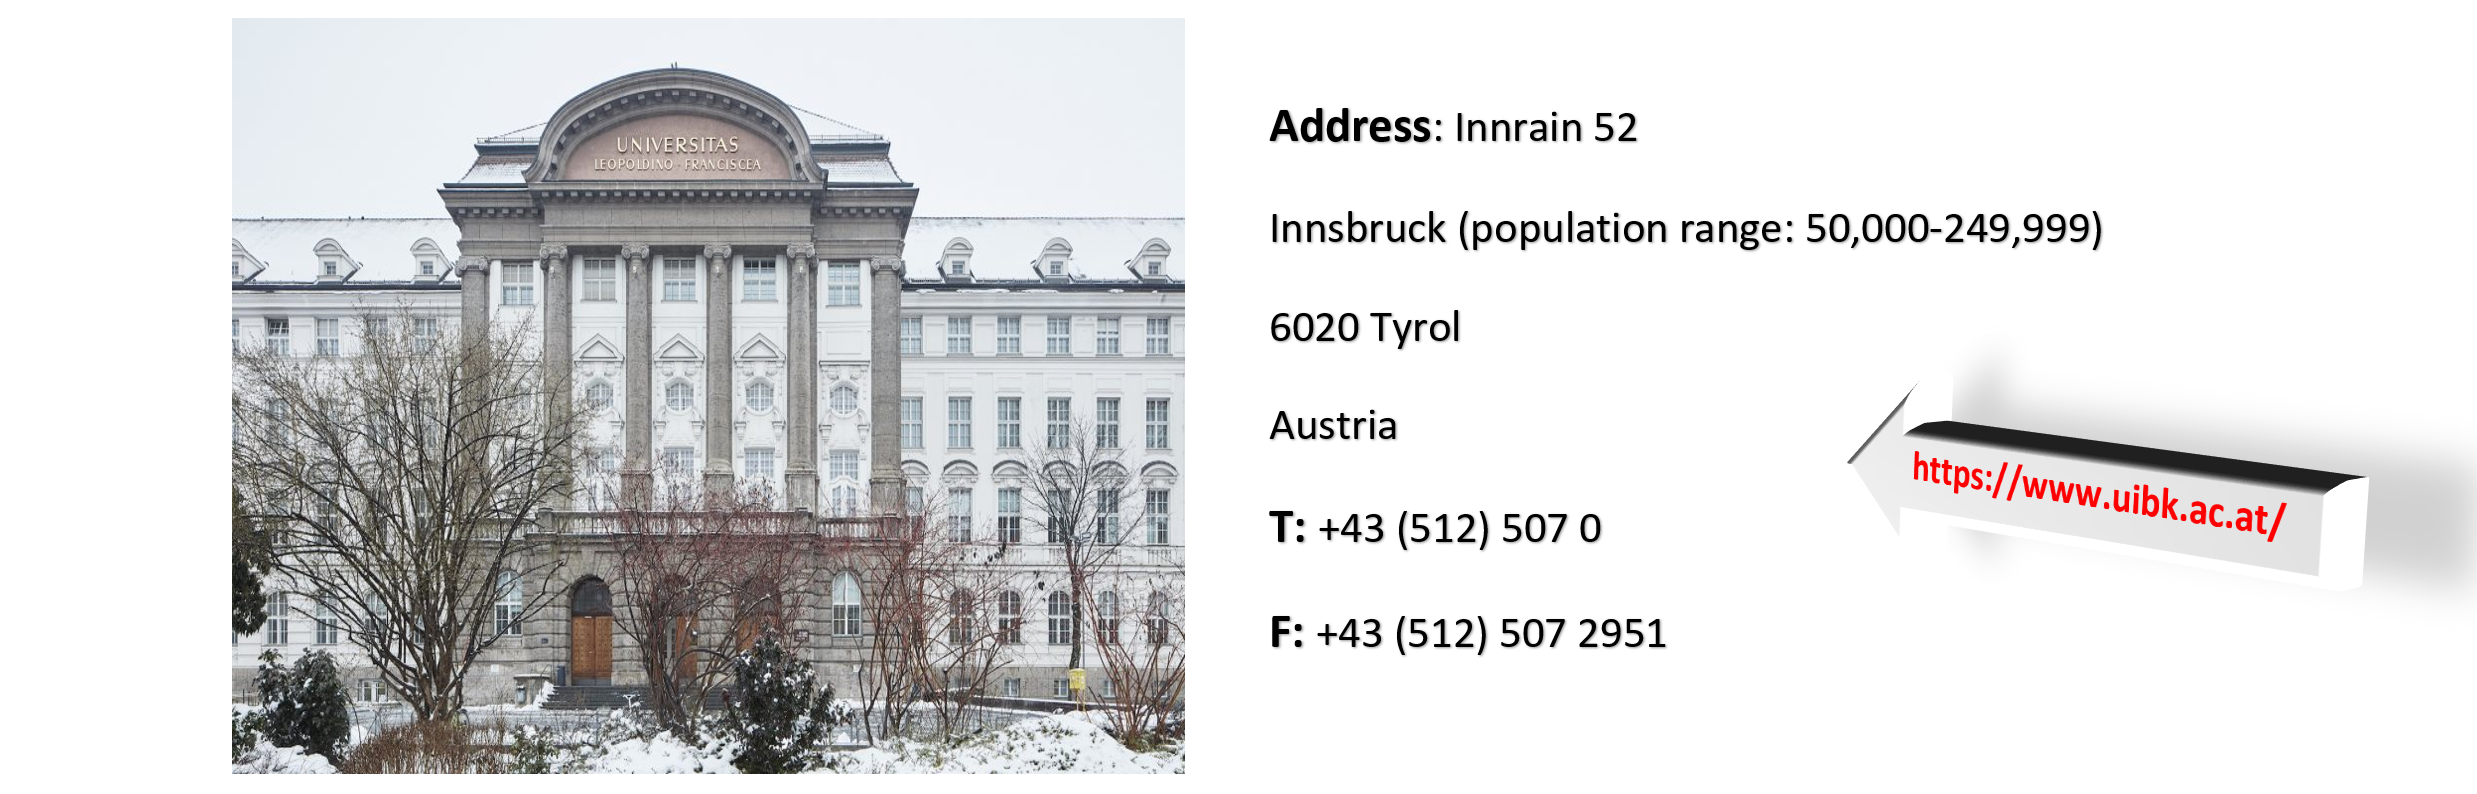 تحصیل در اتریش